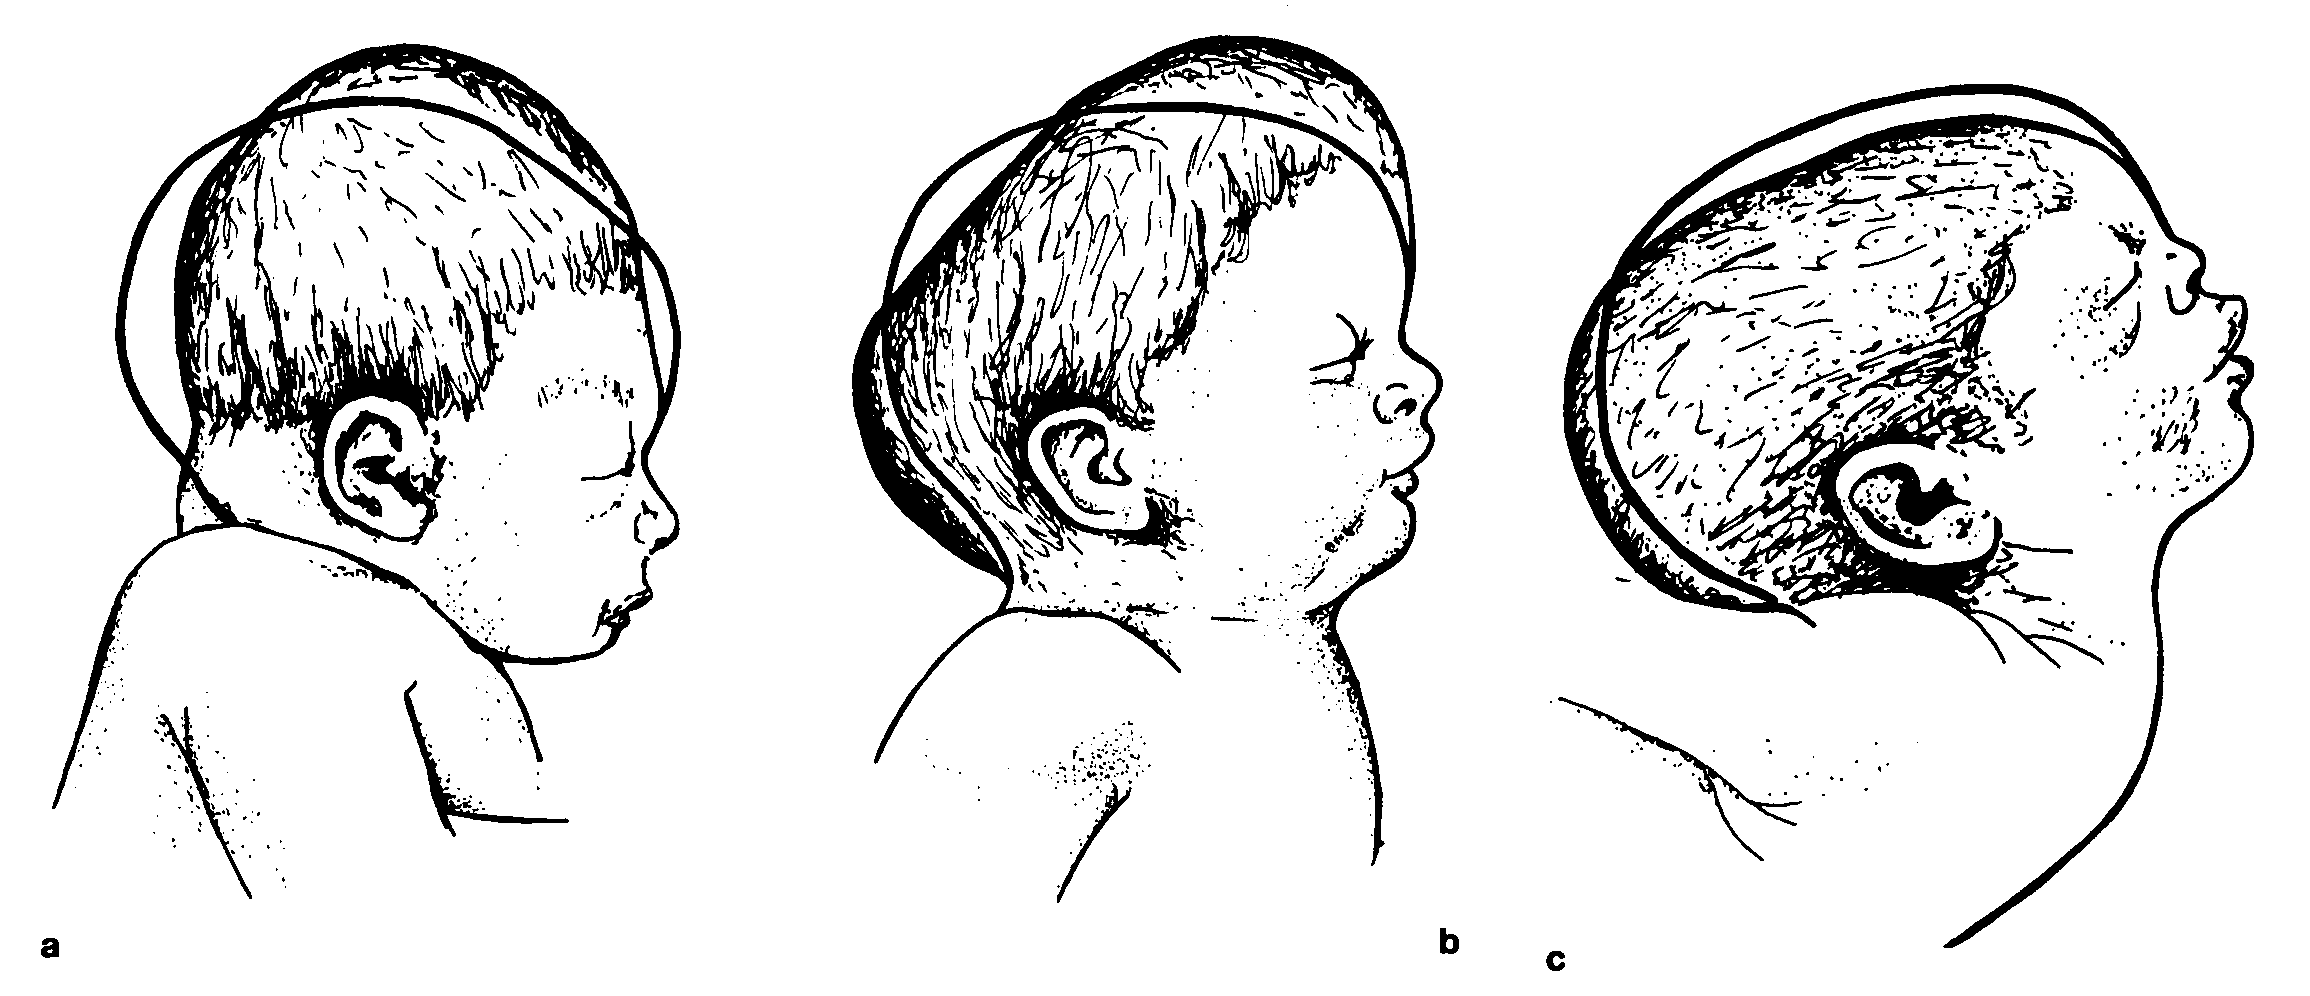 Гематома у новорожденного на голове после родов: последствия, причины и лечение